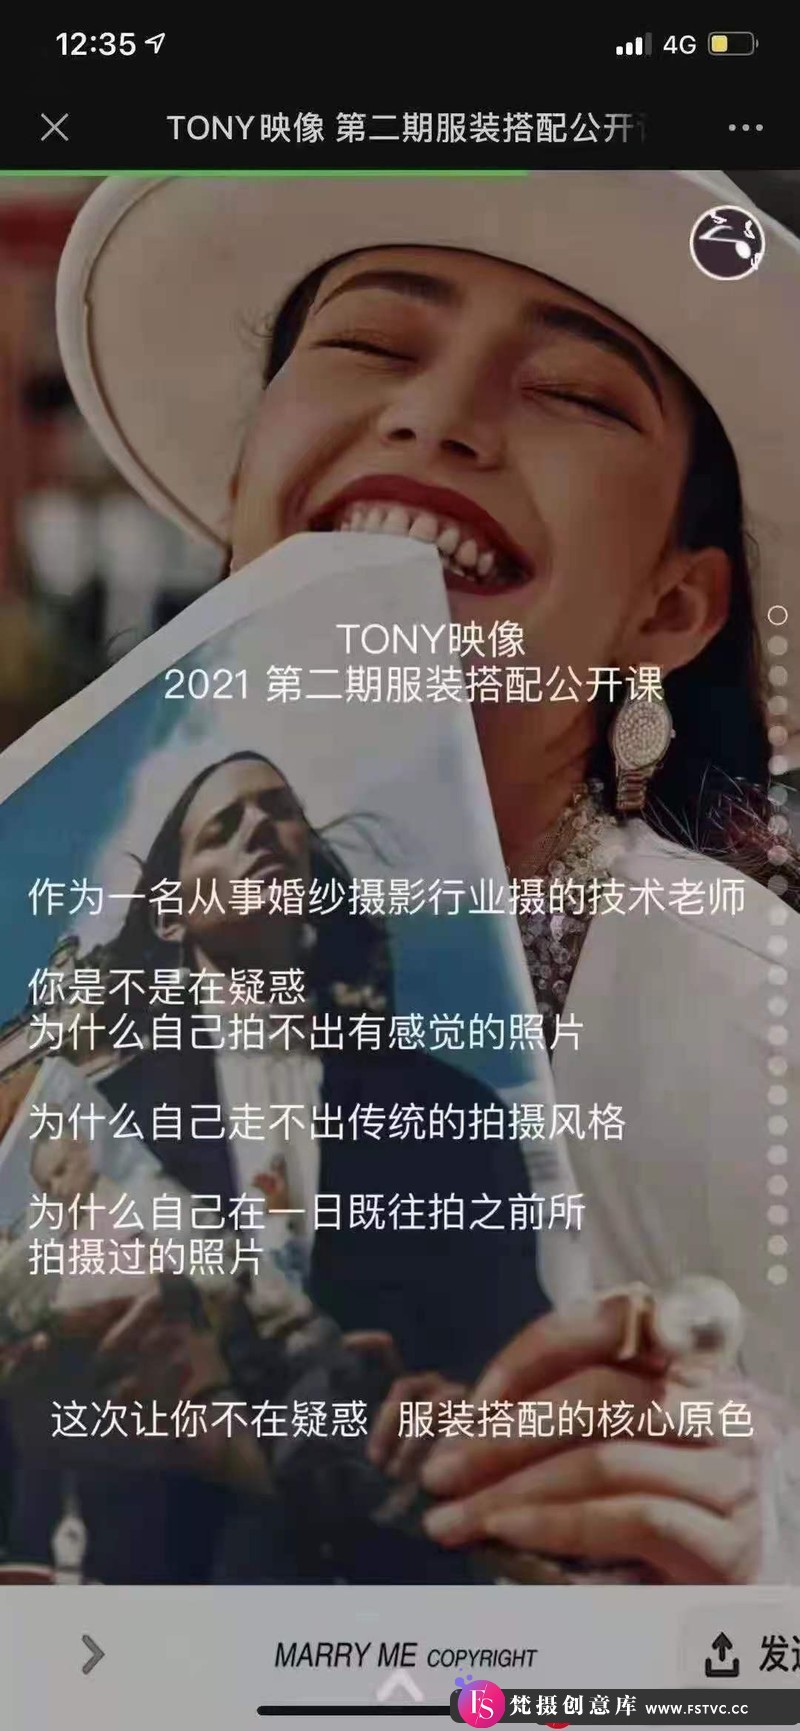 [中文/字幕教程]TONY映像2021服装搭配摄影课程第二期-梵摄创意库